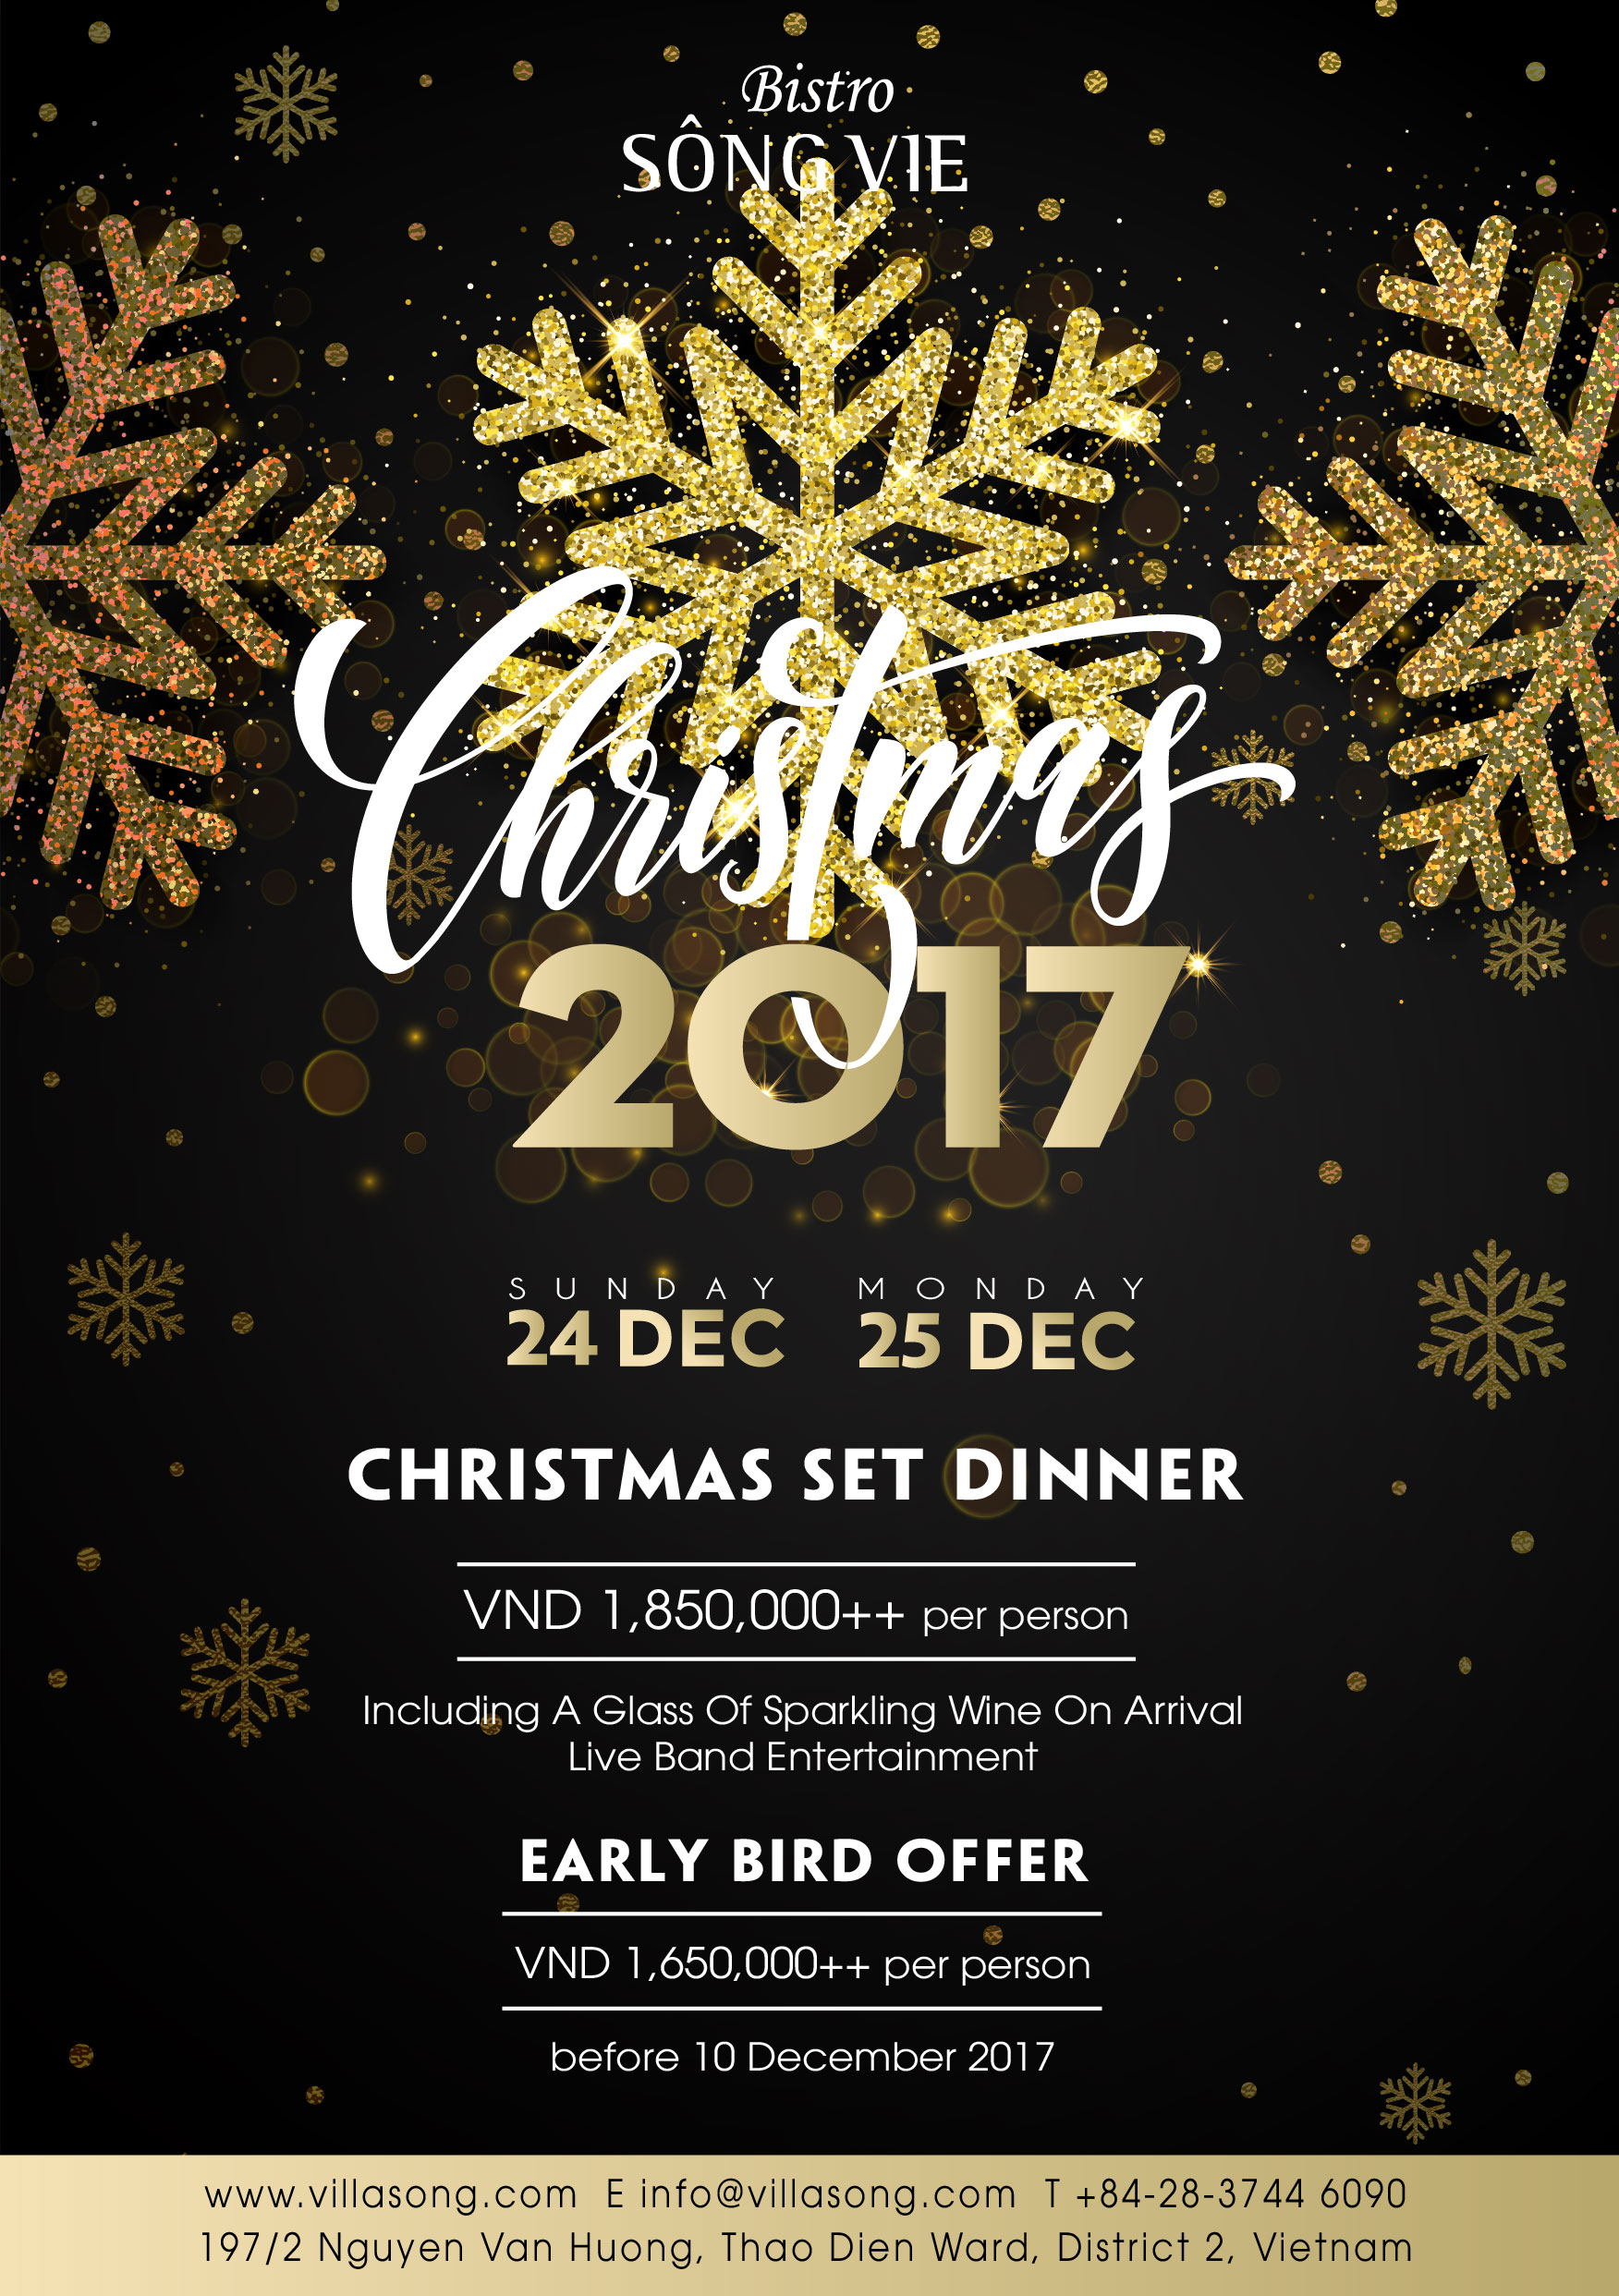 Christmas 2017 offer